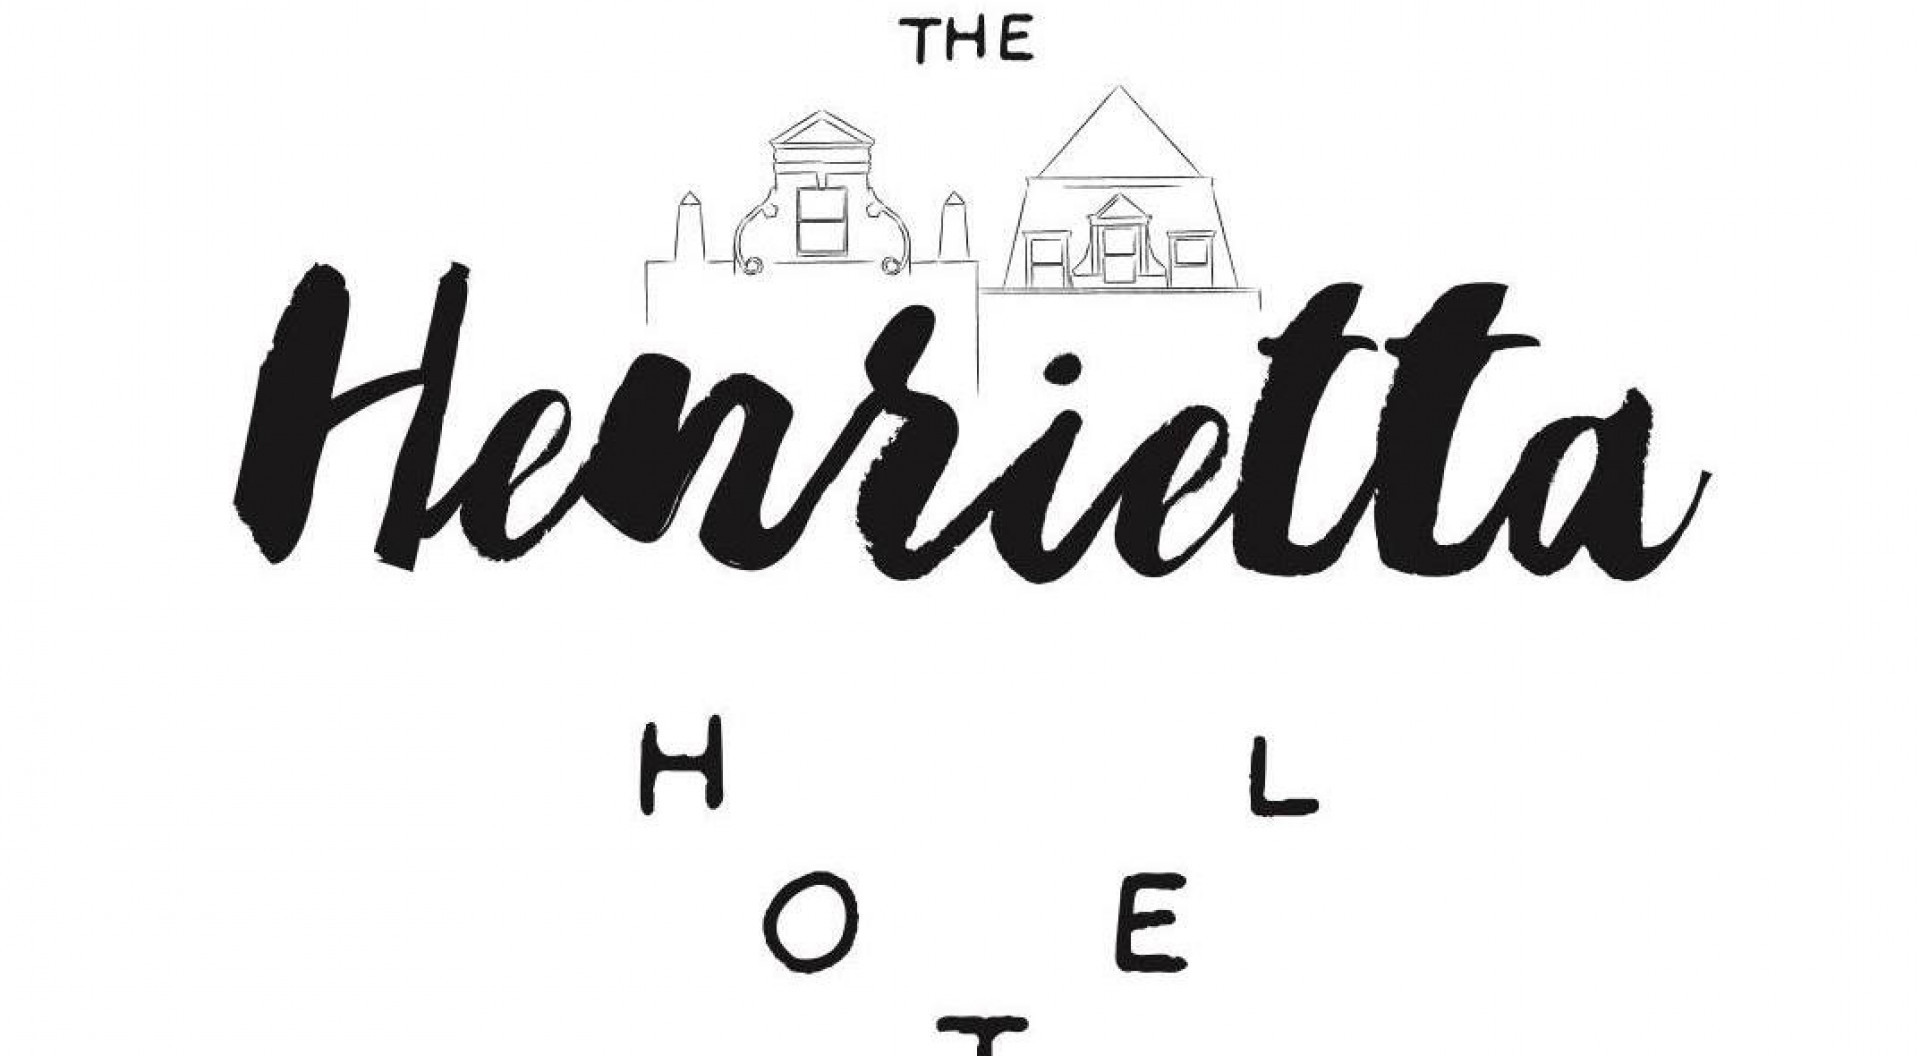 Henrietta Hotel